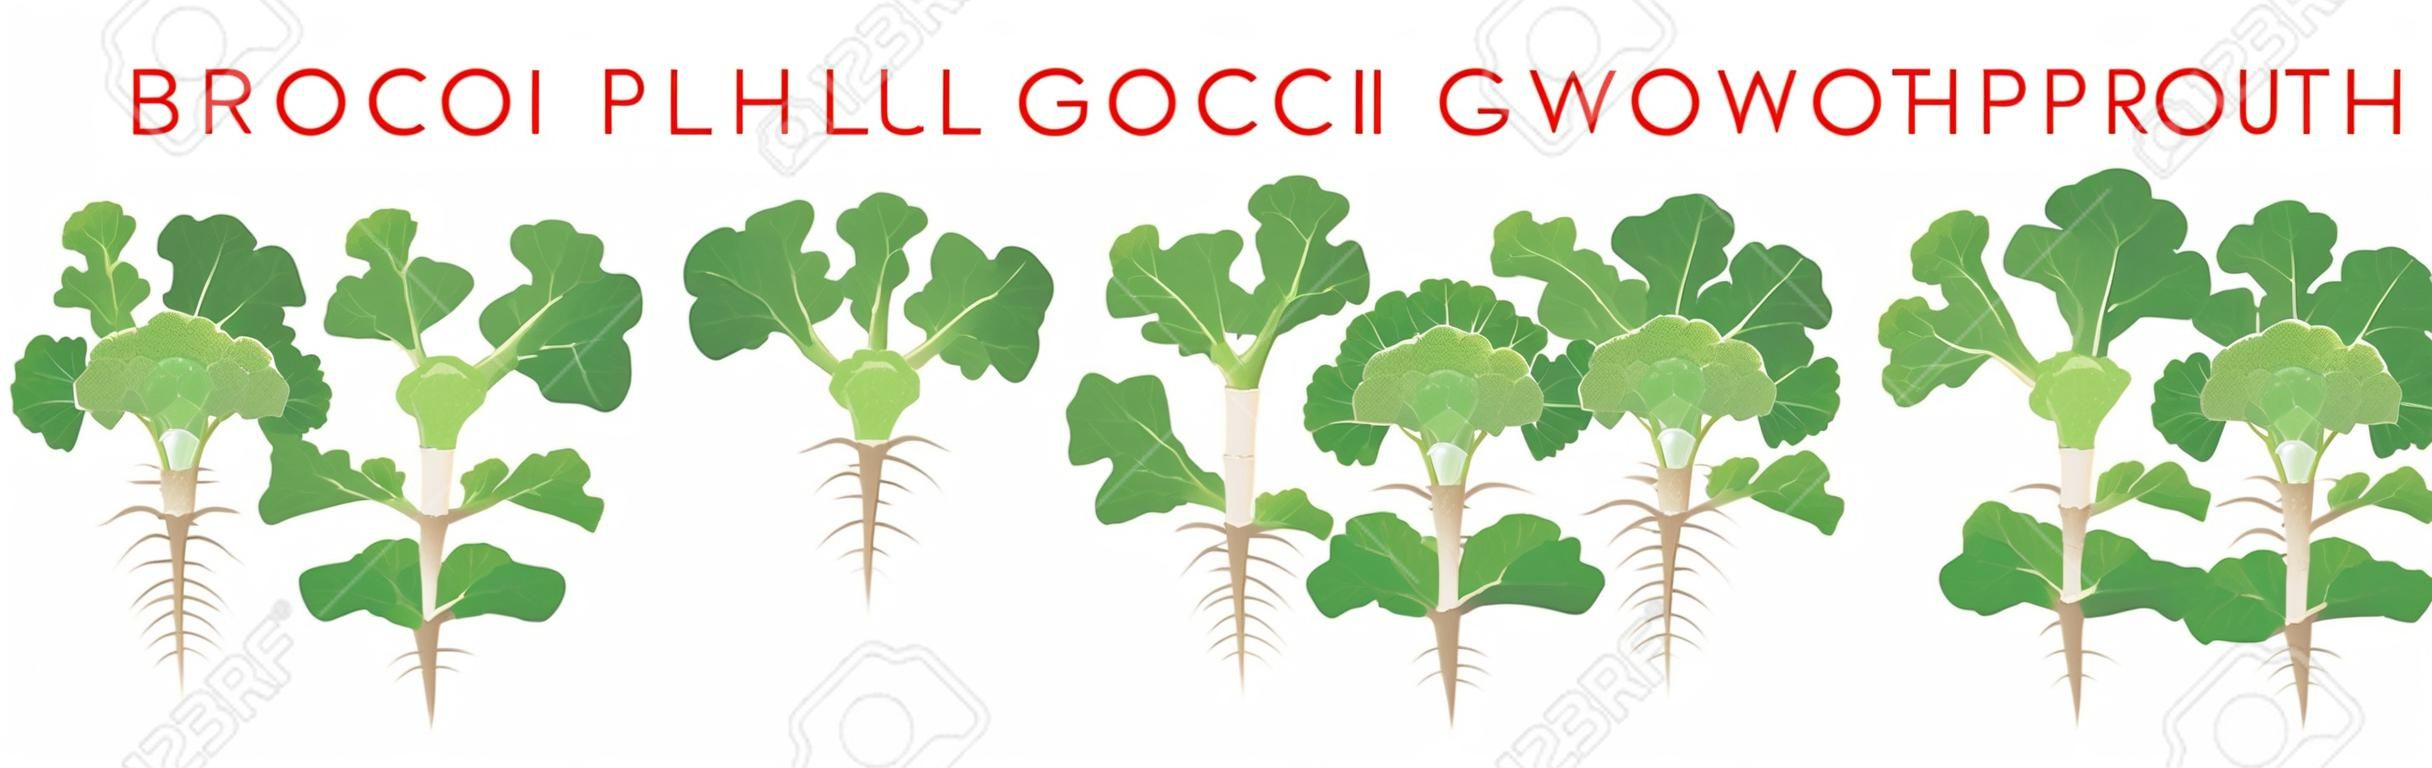 Fasi di crescita delle piante di broccoli elementi infografici. Processo crescente di broccoli dai semi, germoglio alla pianta matura con le radici, ciclo di vita della pianta isolata su fondo bianco